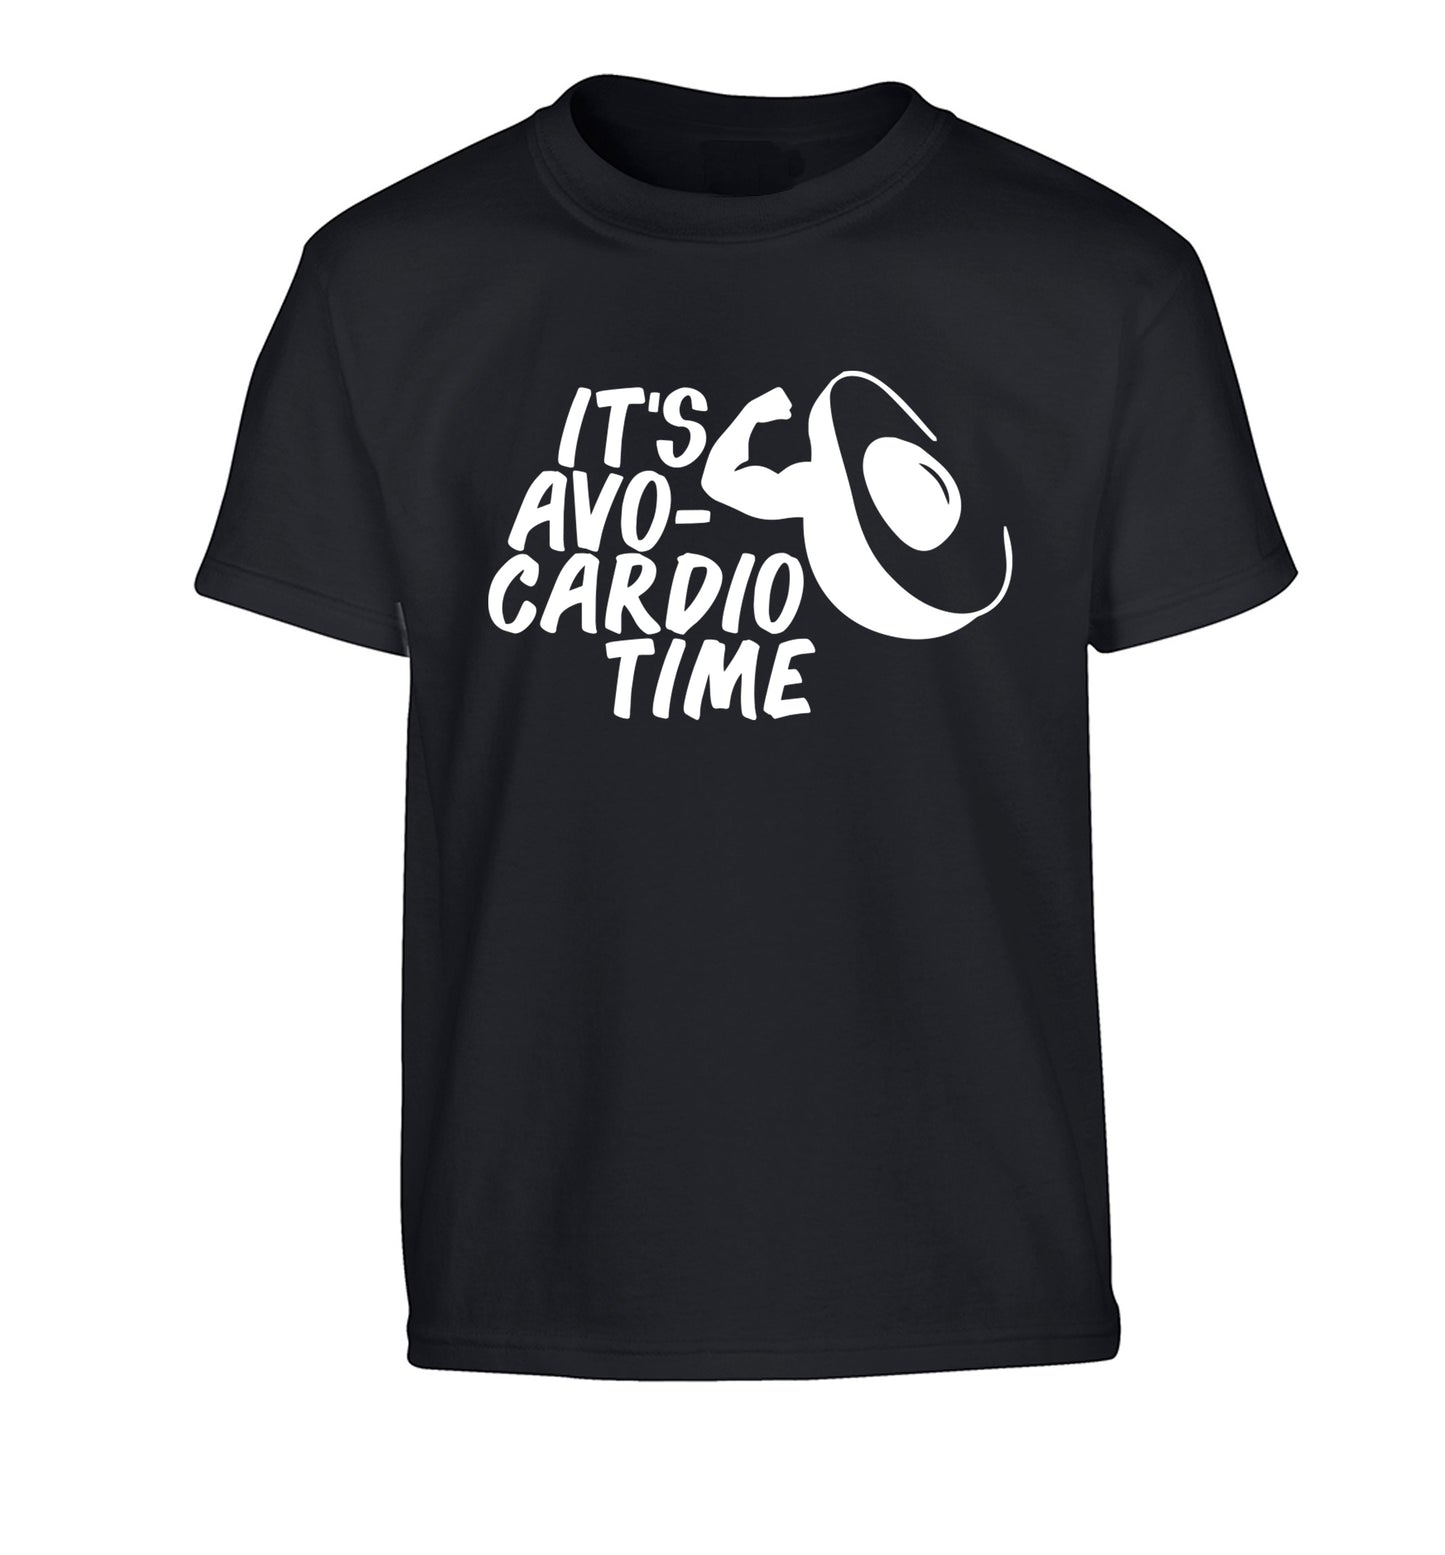 It's avo-cardio time Children's black Tshirt 12-14 Years